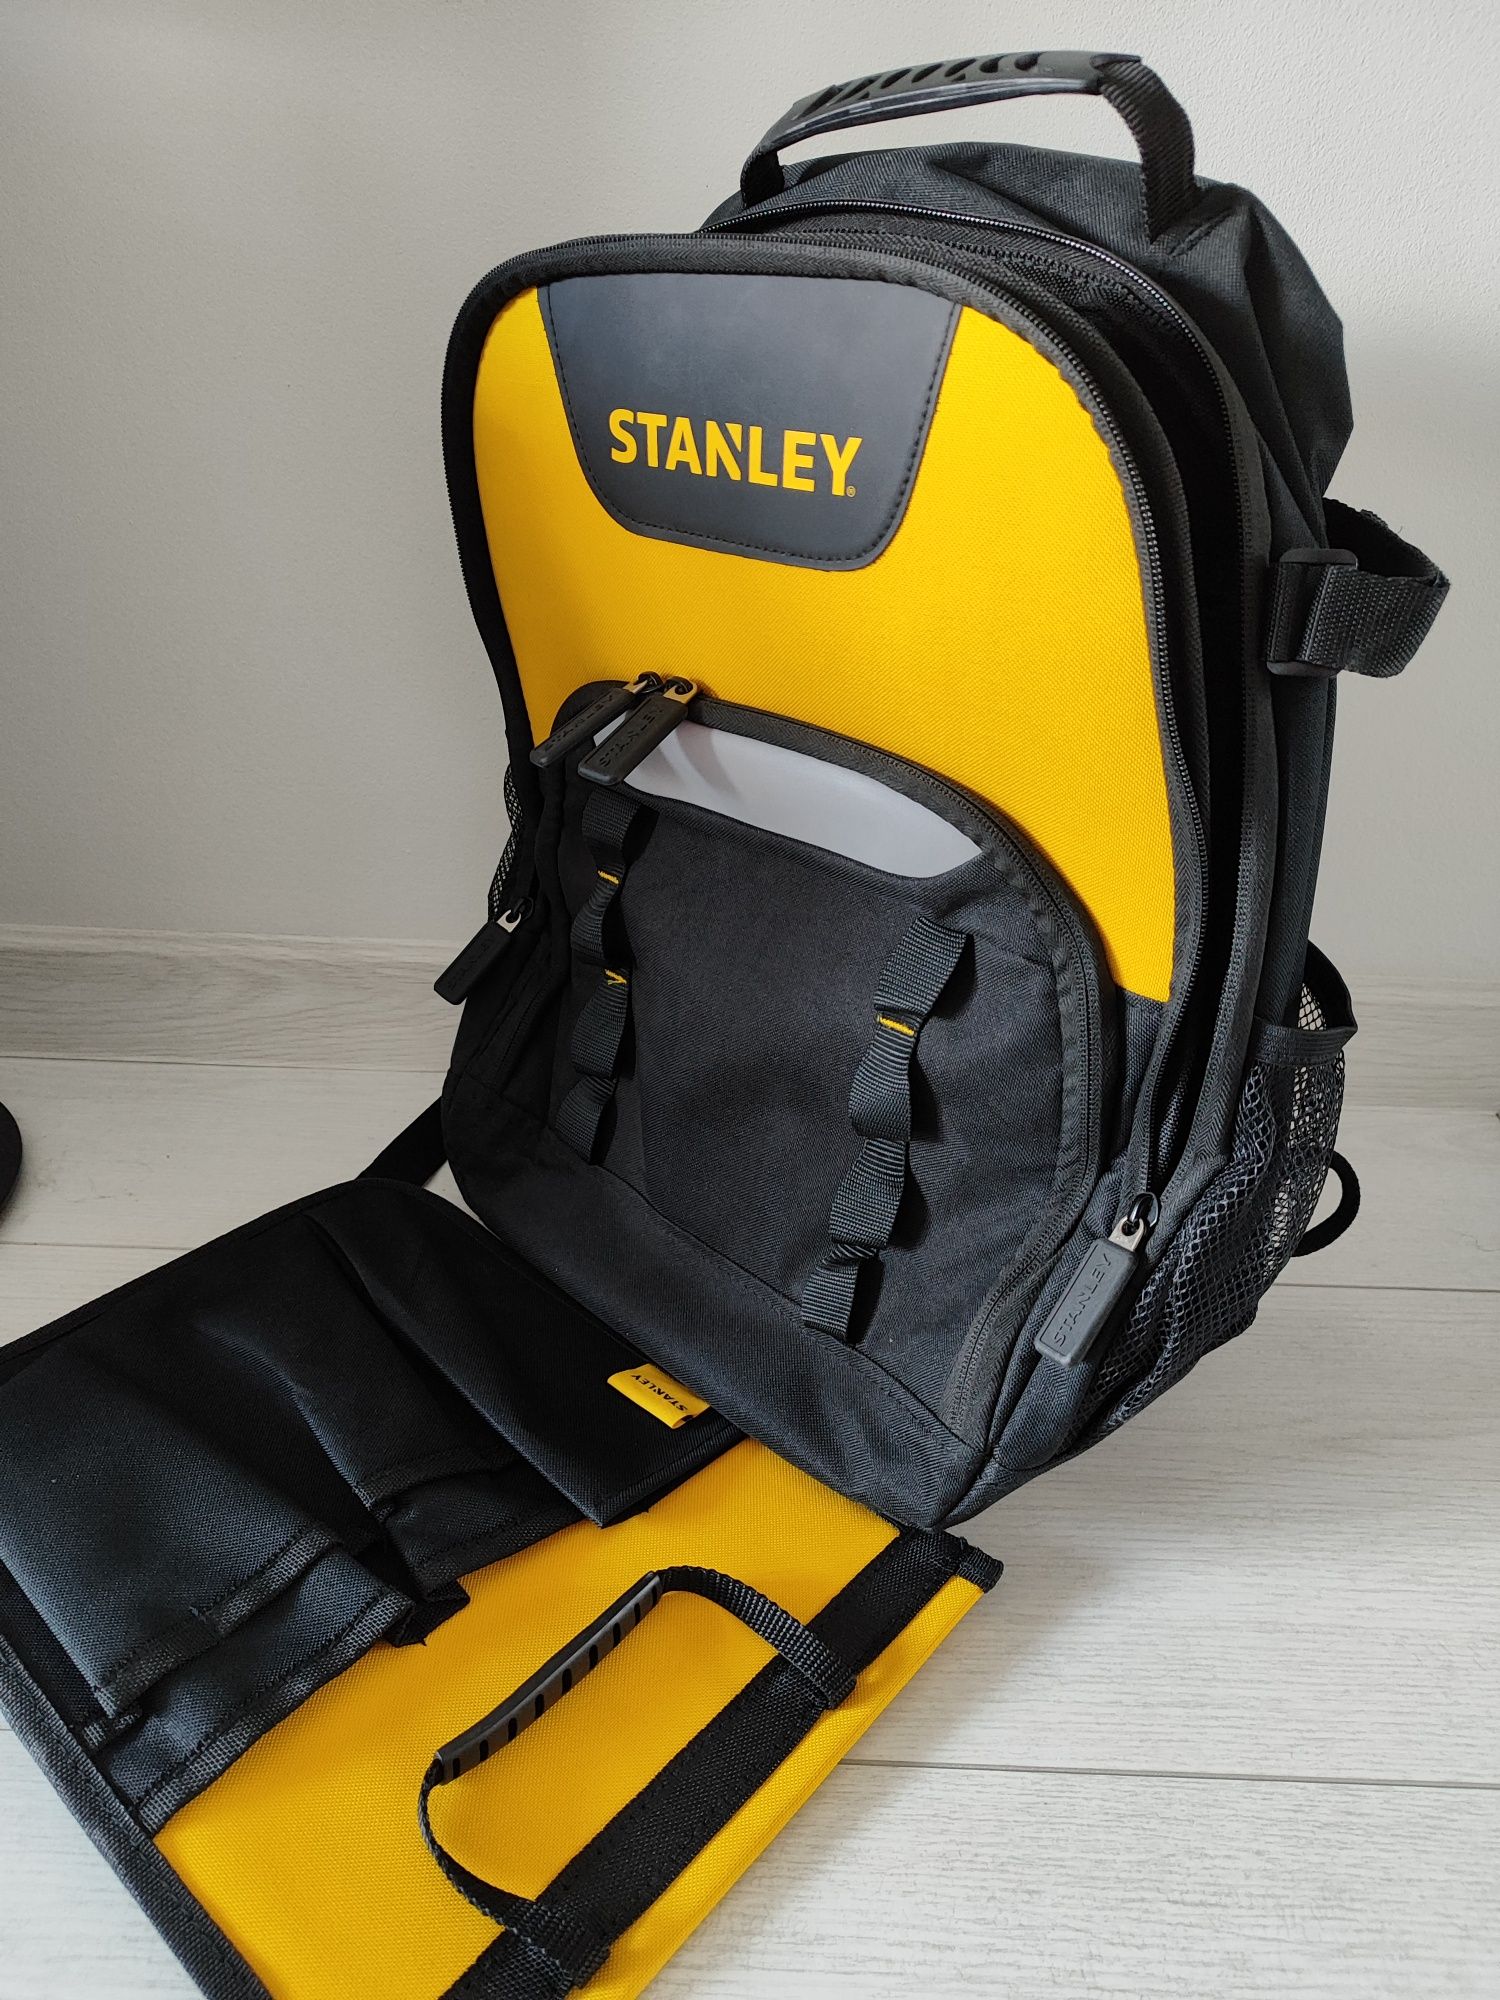 Plecak narzędziowy Stanley, nowy